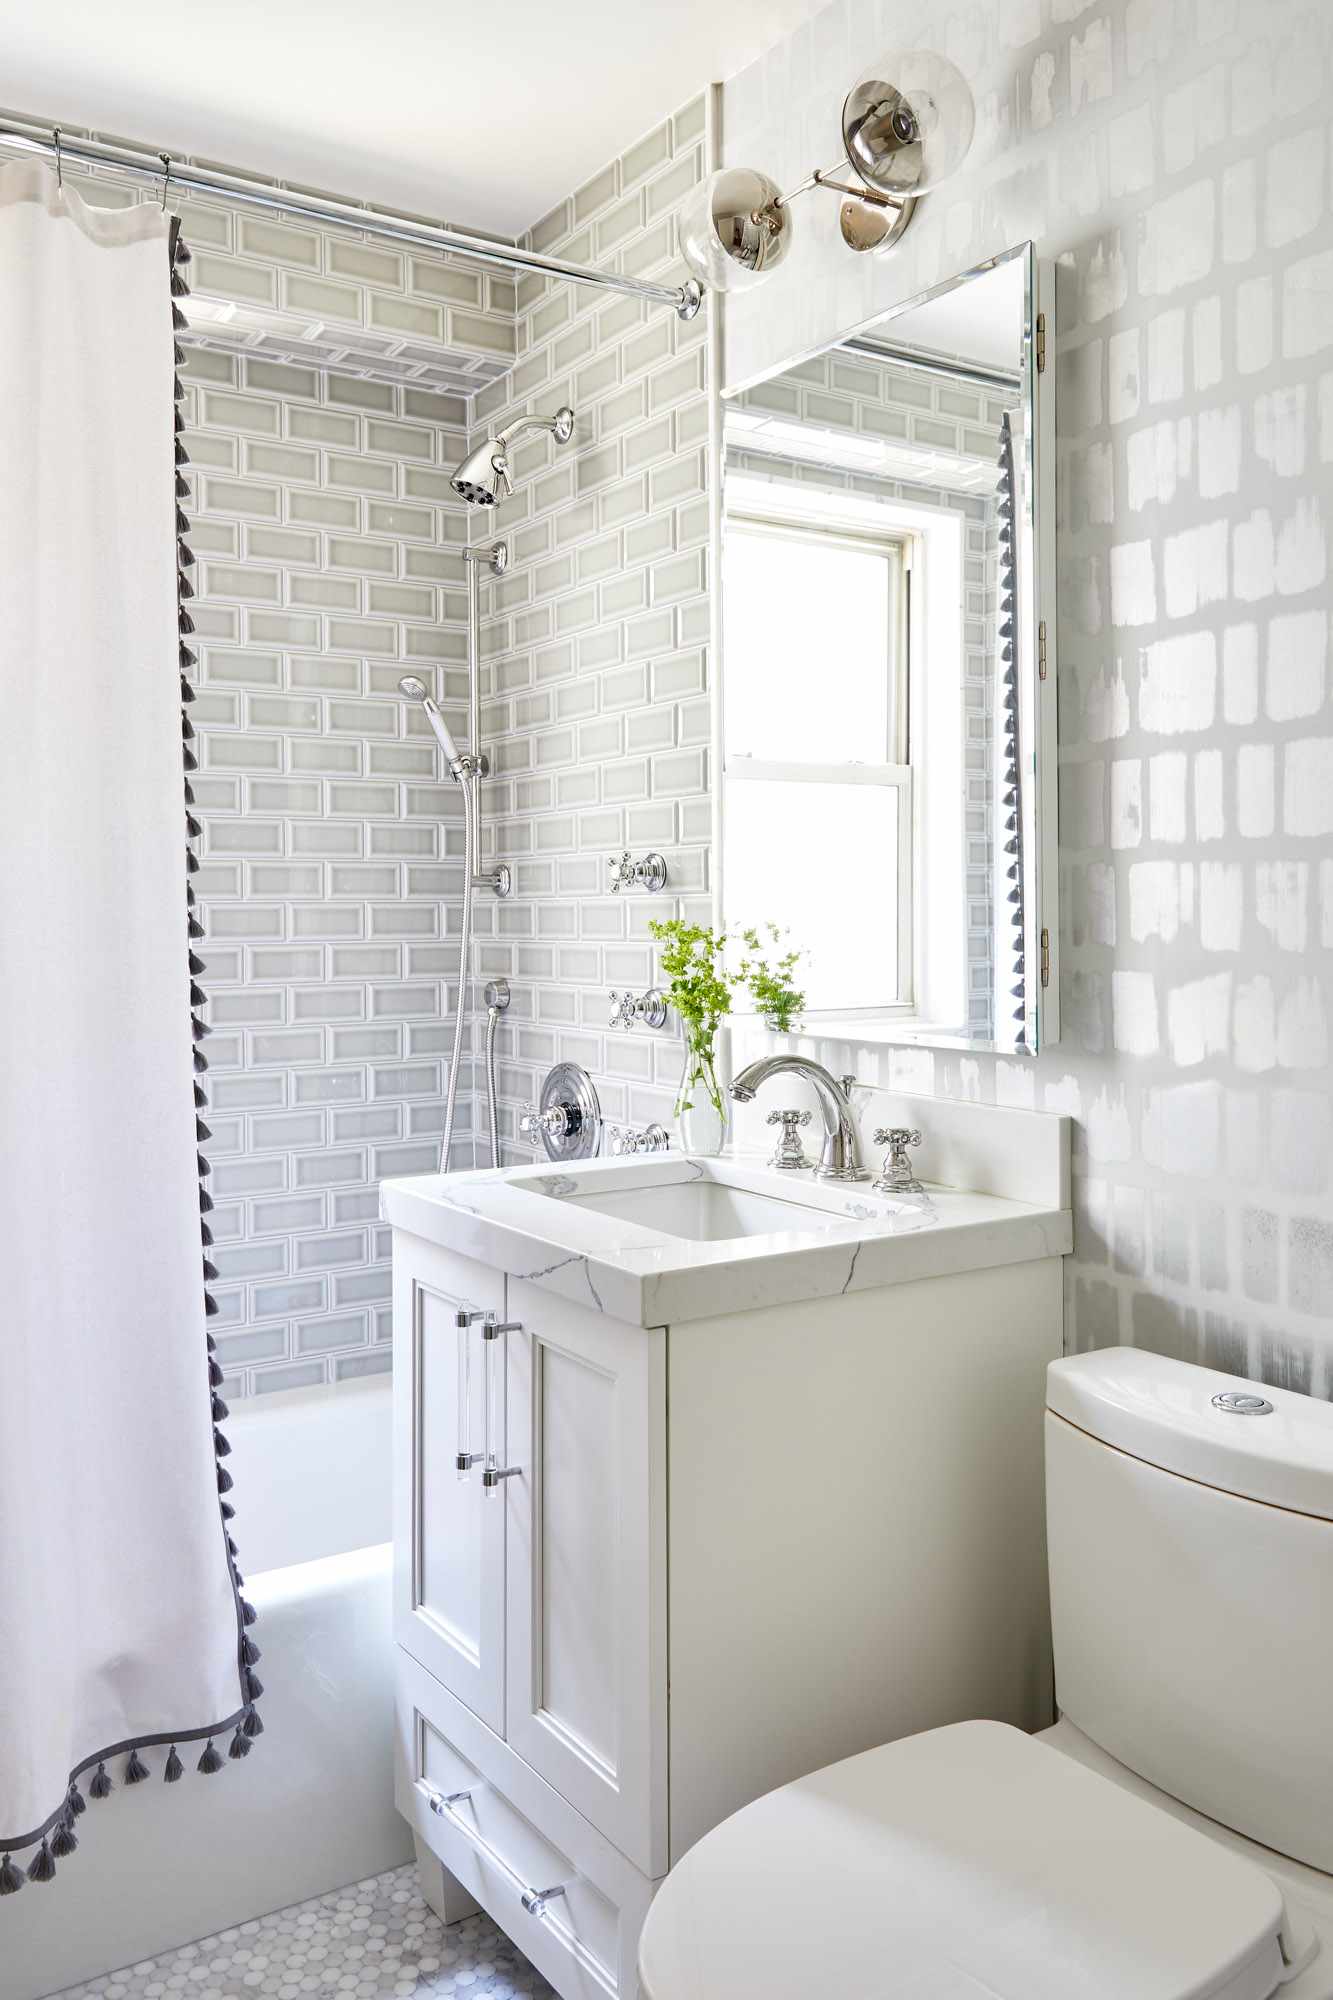 Baño con azulejo y papel pintado gris y cortina de ducha blanca con borlas negras